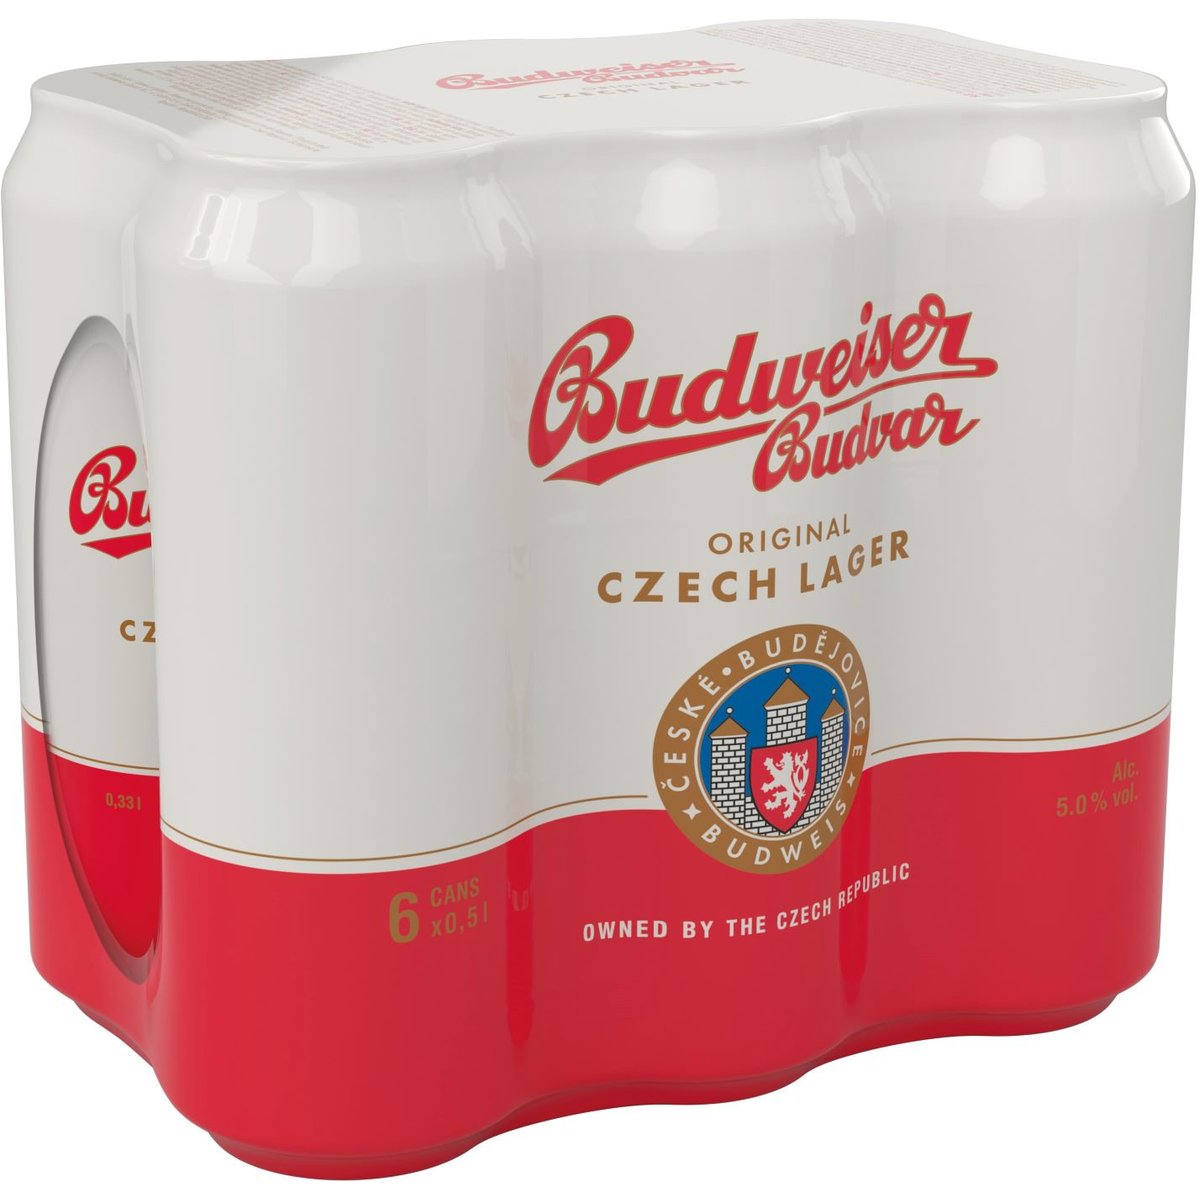 Budweiser Budvar světlý ležák pivo 6×0,5 plech